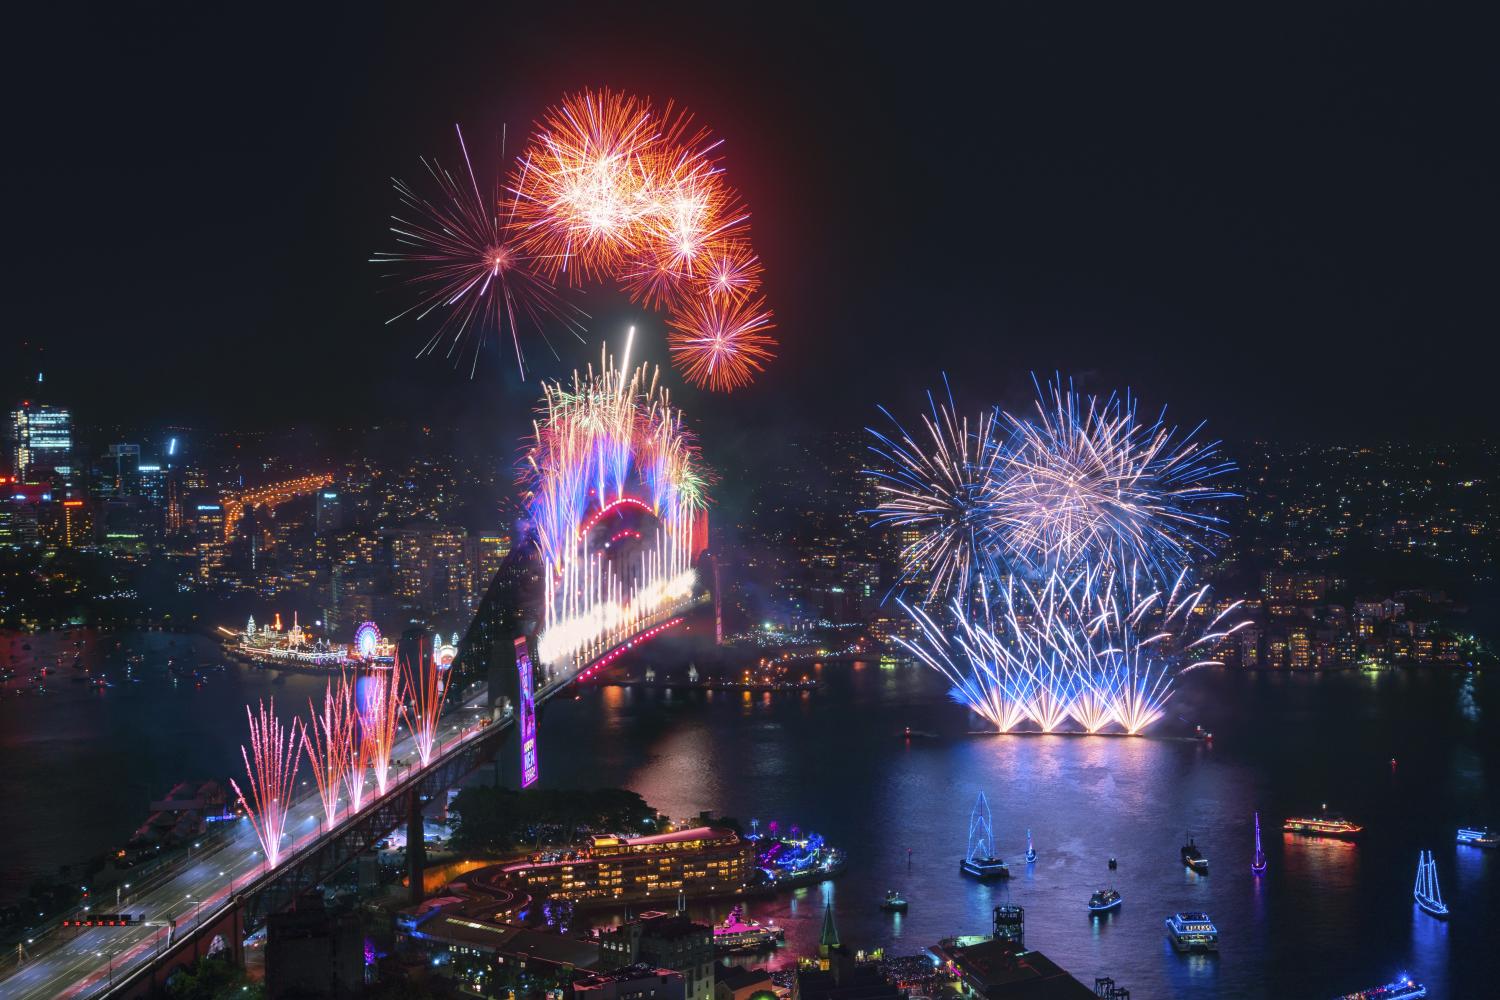 壯觀的午夜煙花匯演遍布悉尼港在慶祝新的一年的開始2020